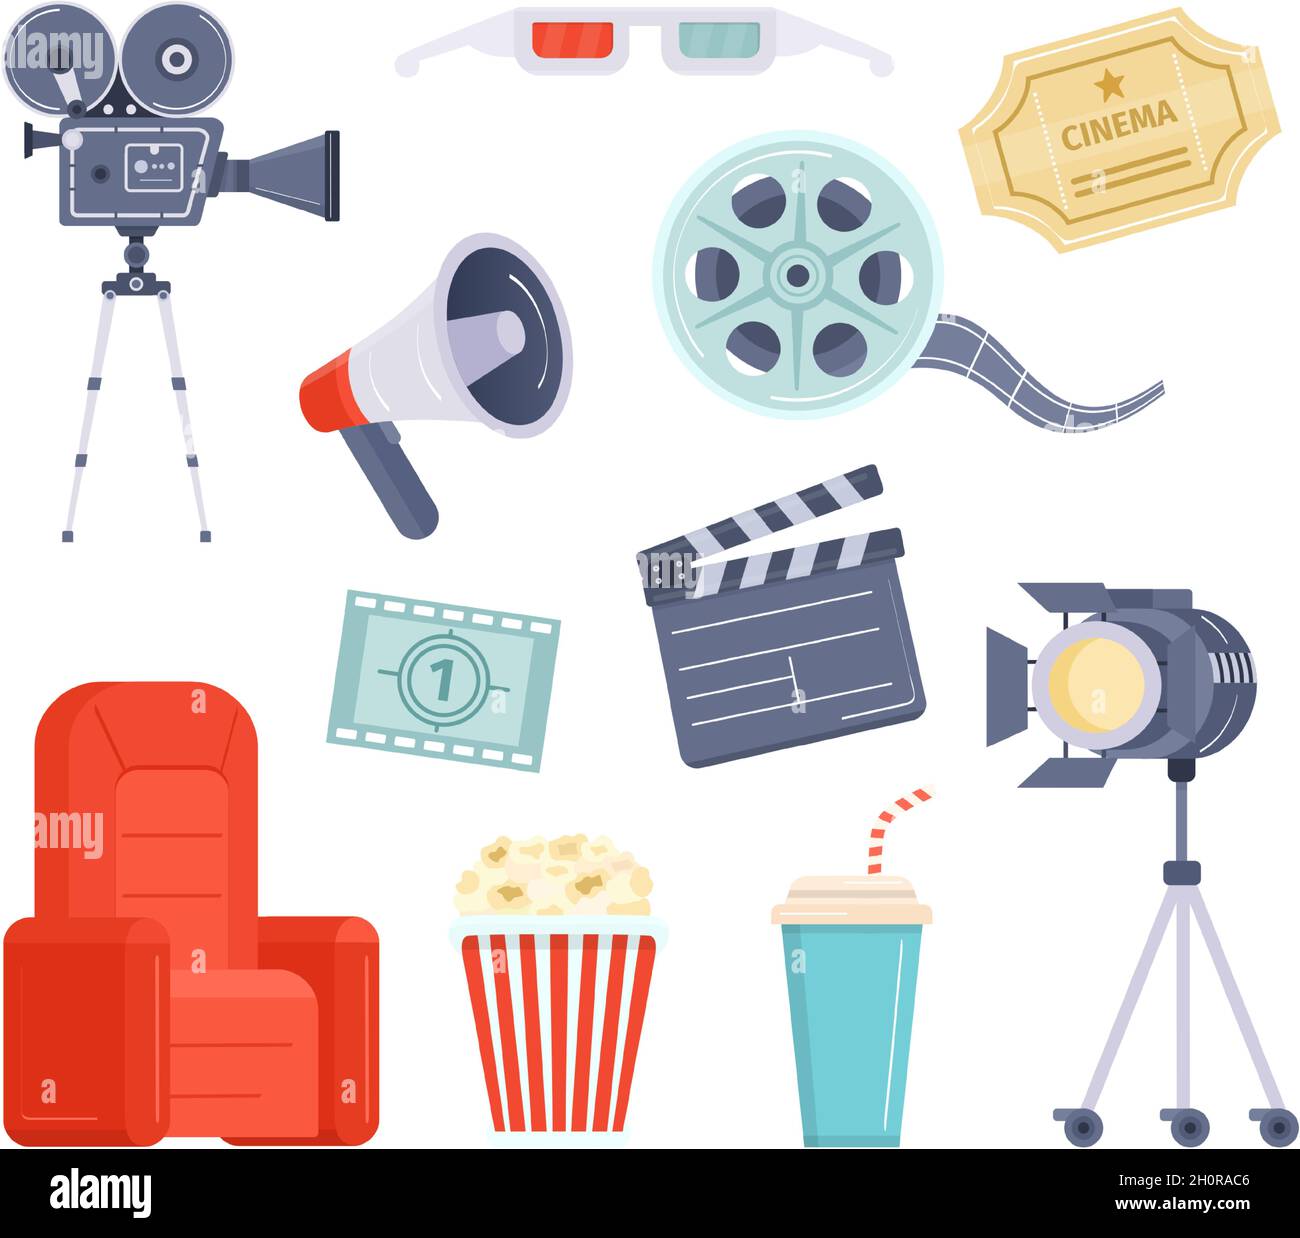 Flat Movie Watching und Production Element, Kinokarte, Film und Popcorn. Cartoon-Videokamera, Regisseur Megaphon und Klapper Vektor-Set Stock Vektor